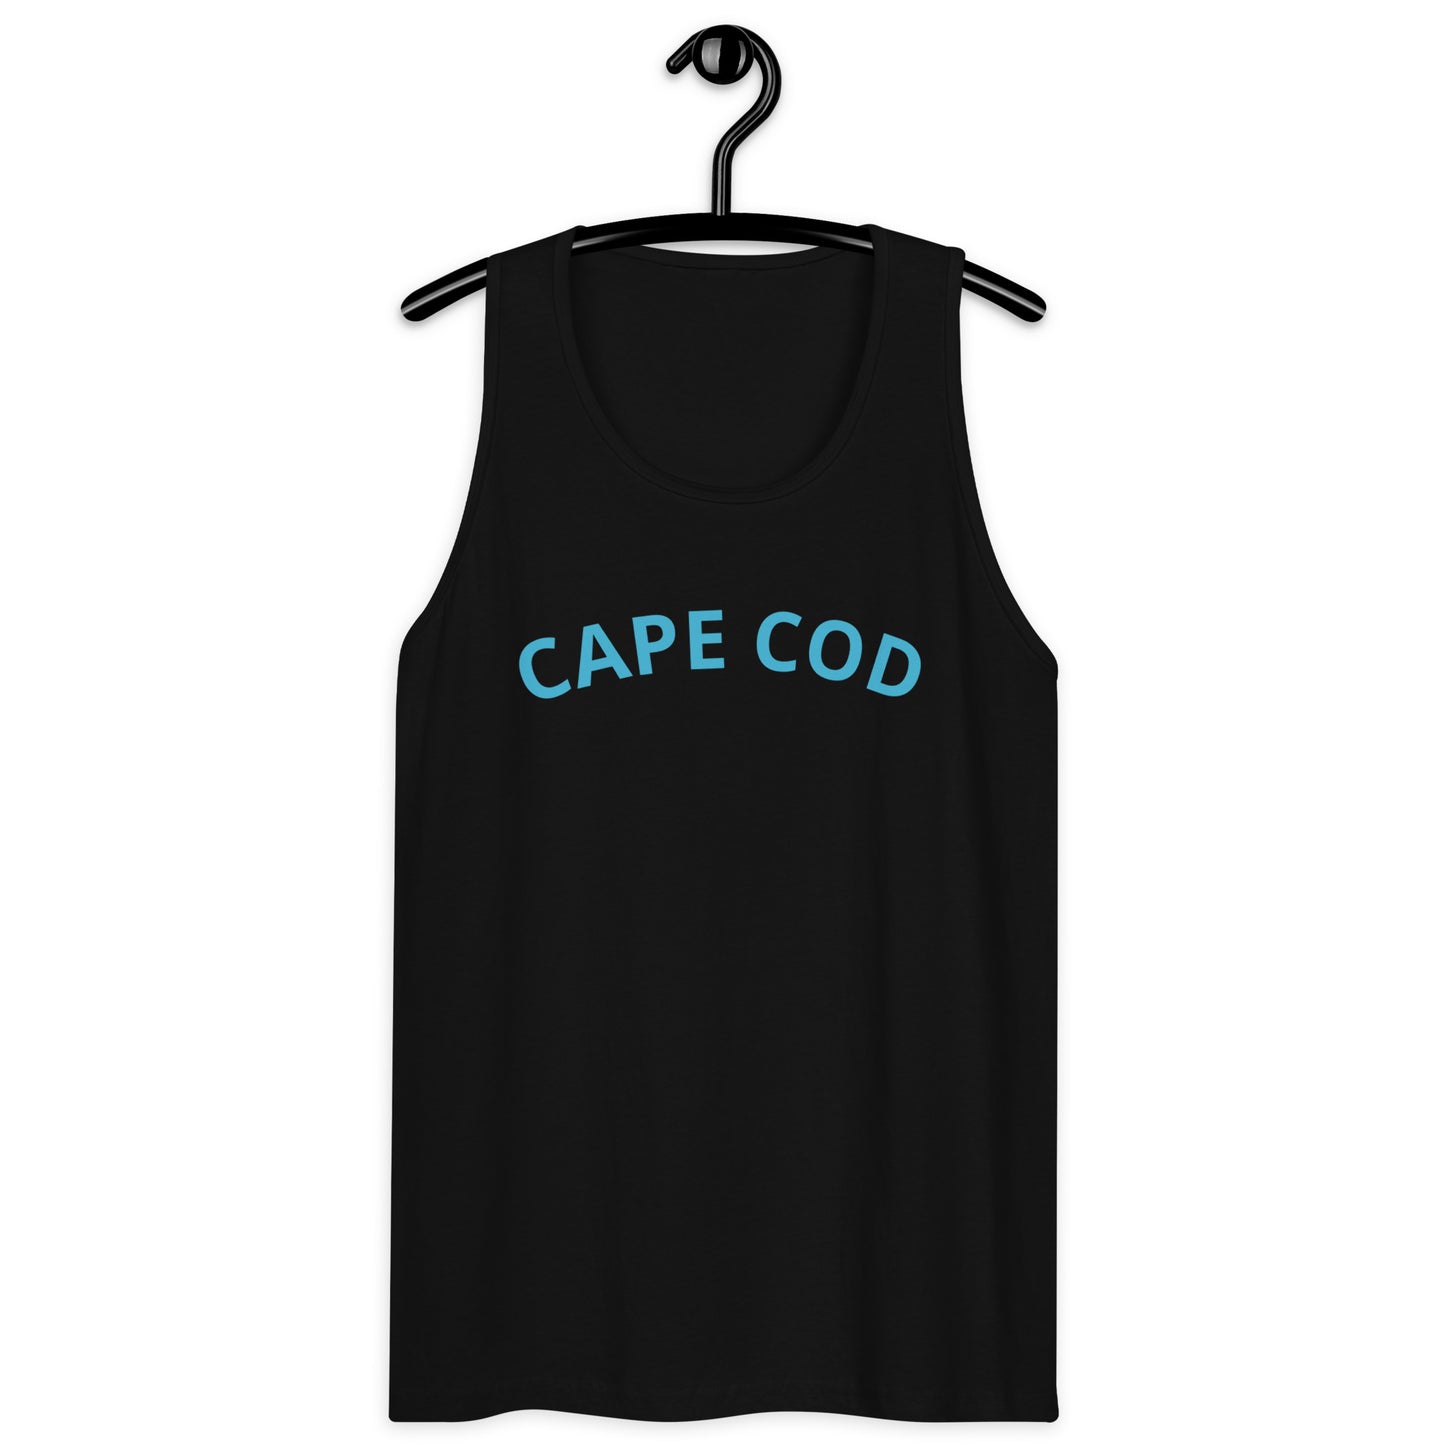 Cape Cod men’s premium tank top